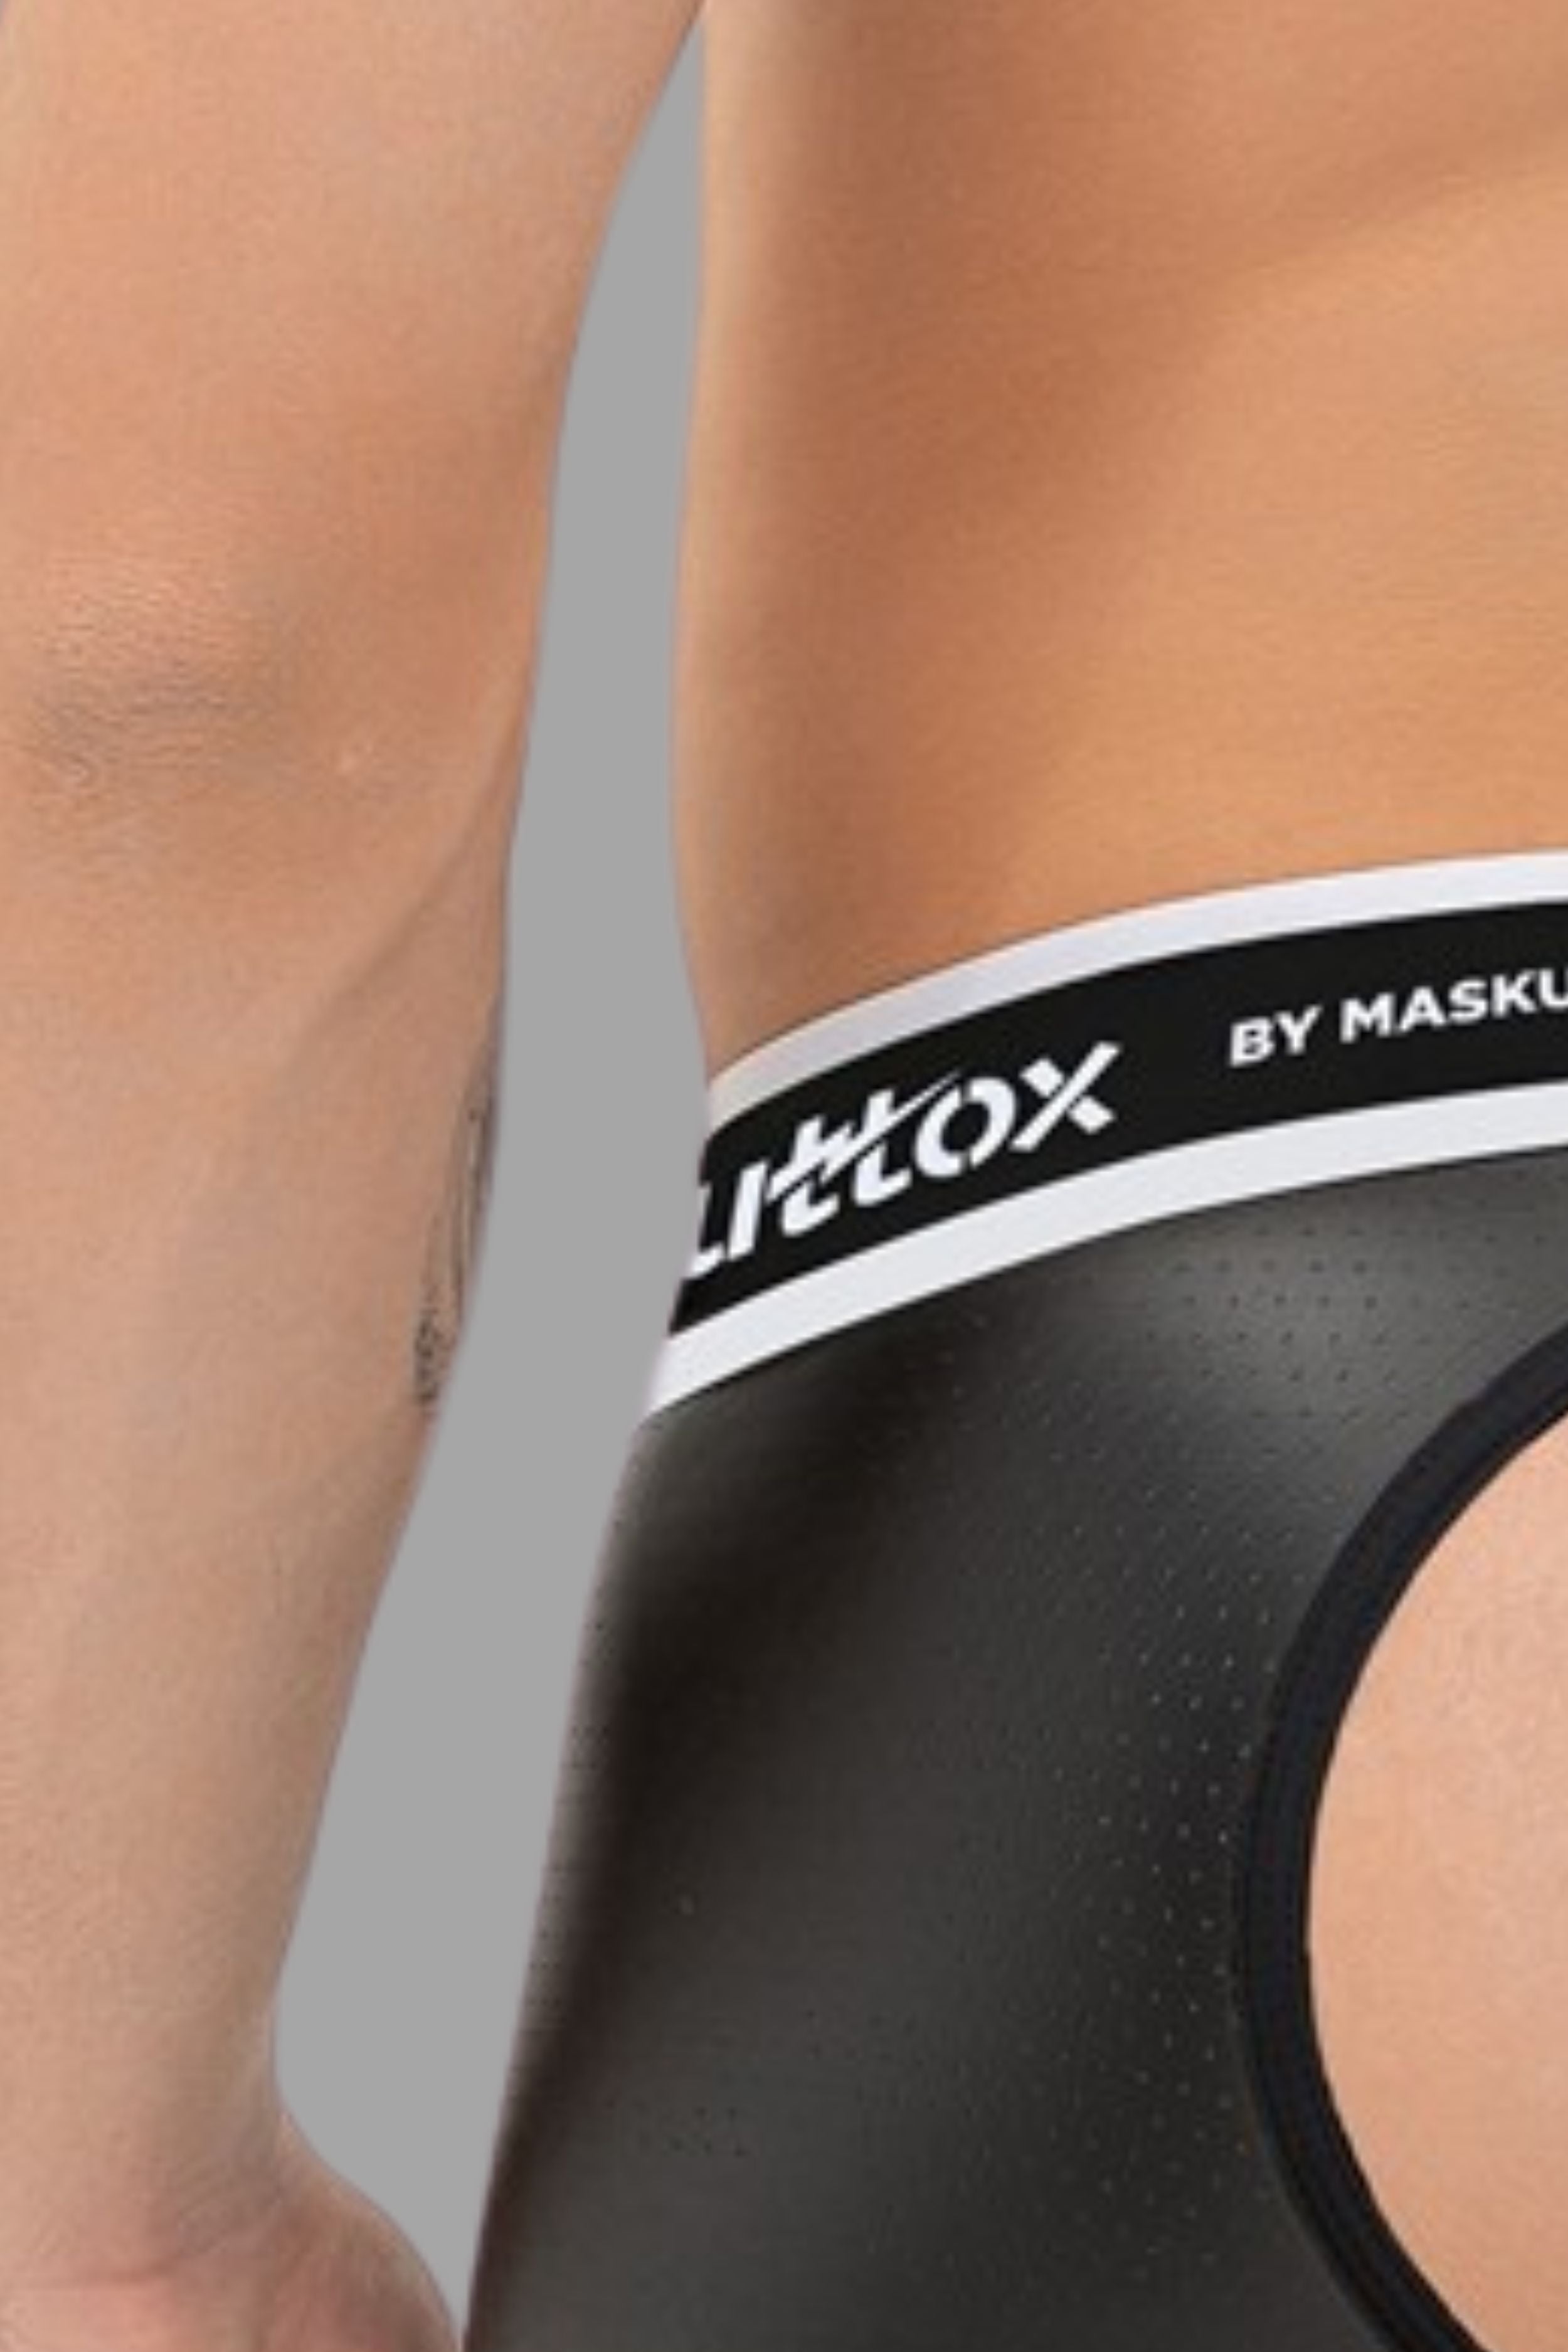 Outtox. Shorts mit offenem Rücken und Druckknopf-Codpiece. Schwarz